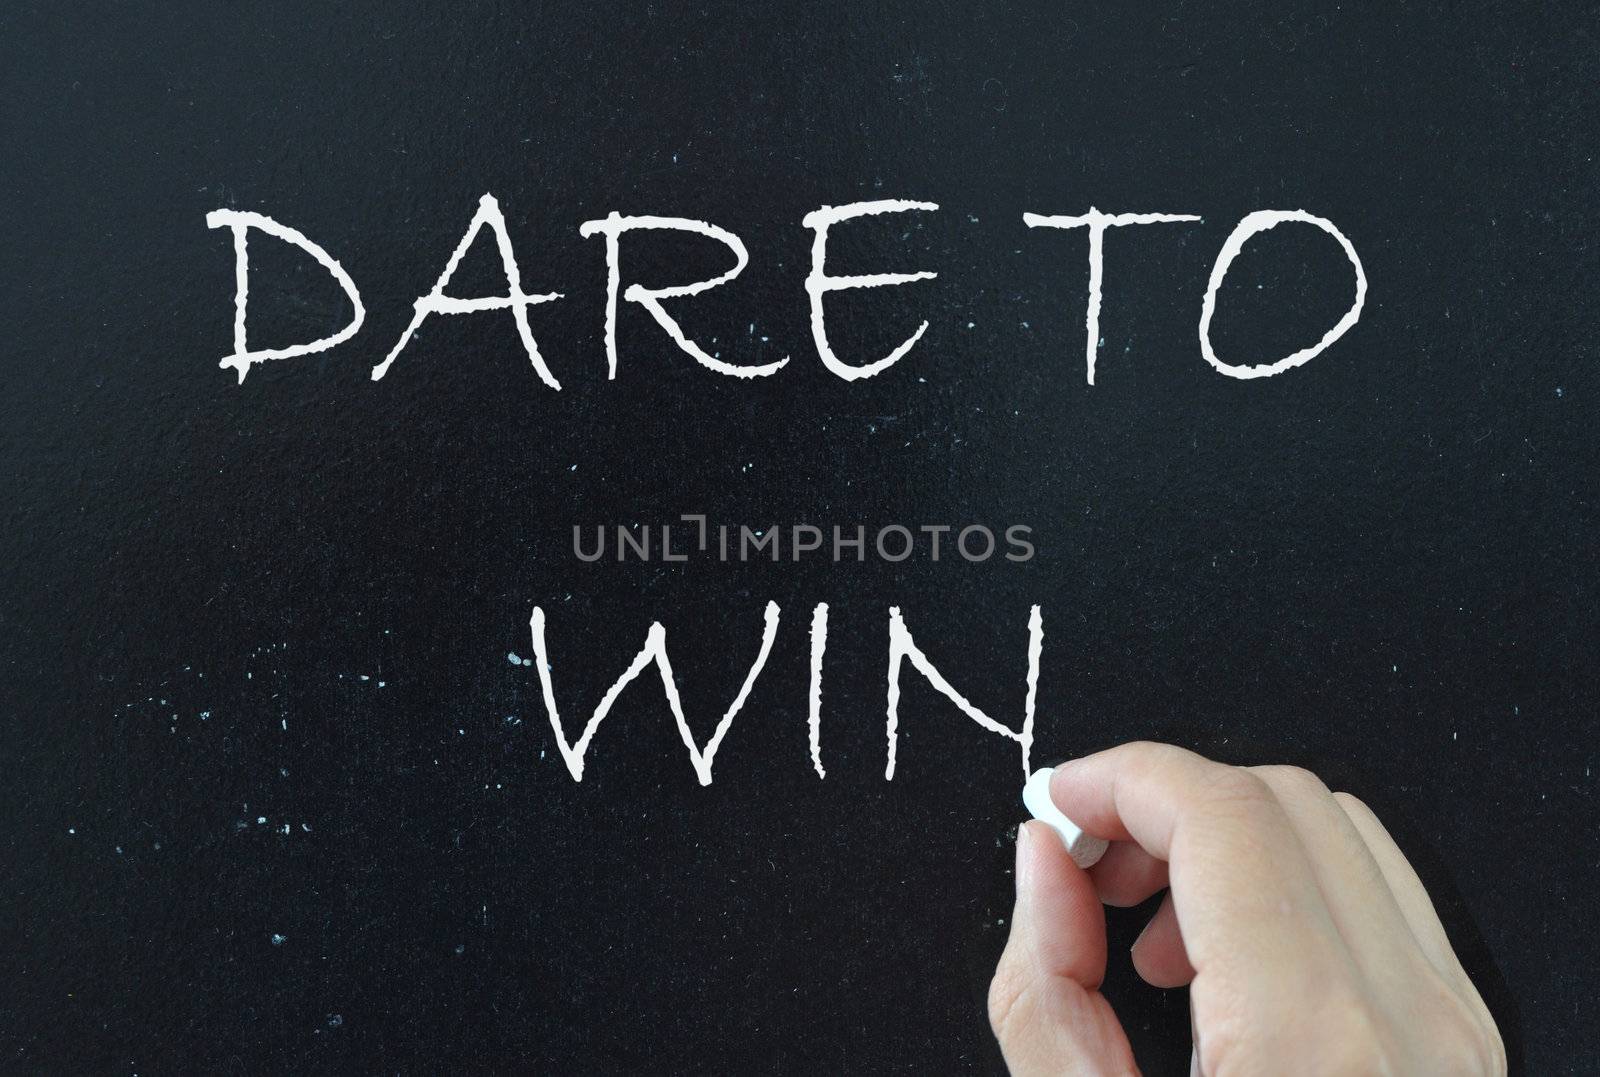 Dare to win written with chalk on a blackboard